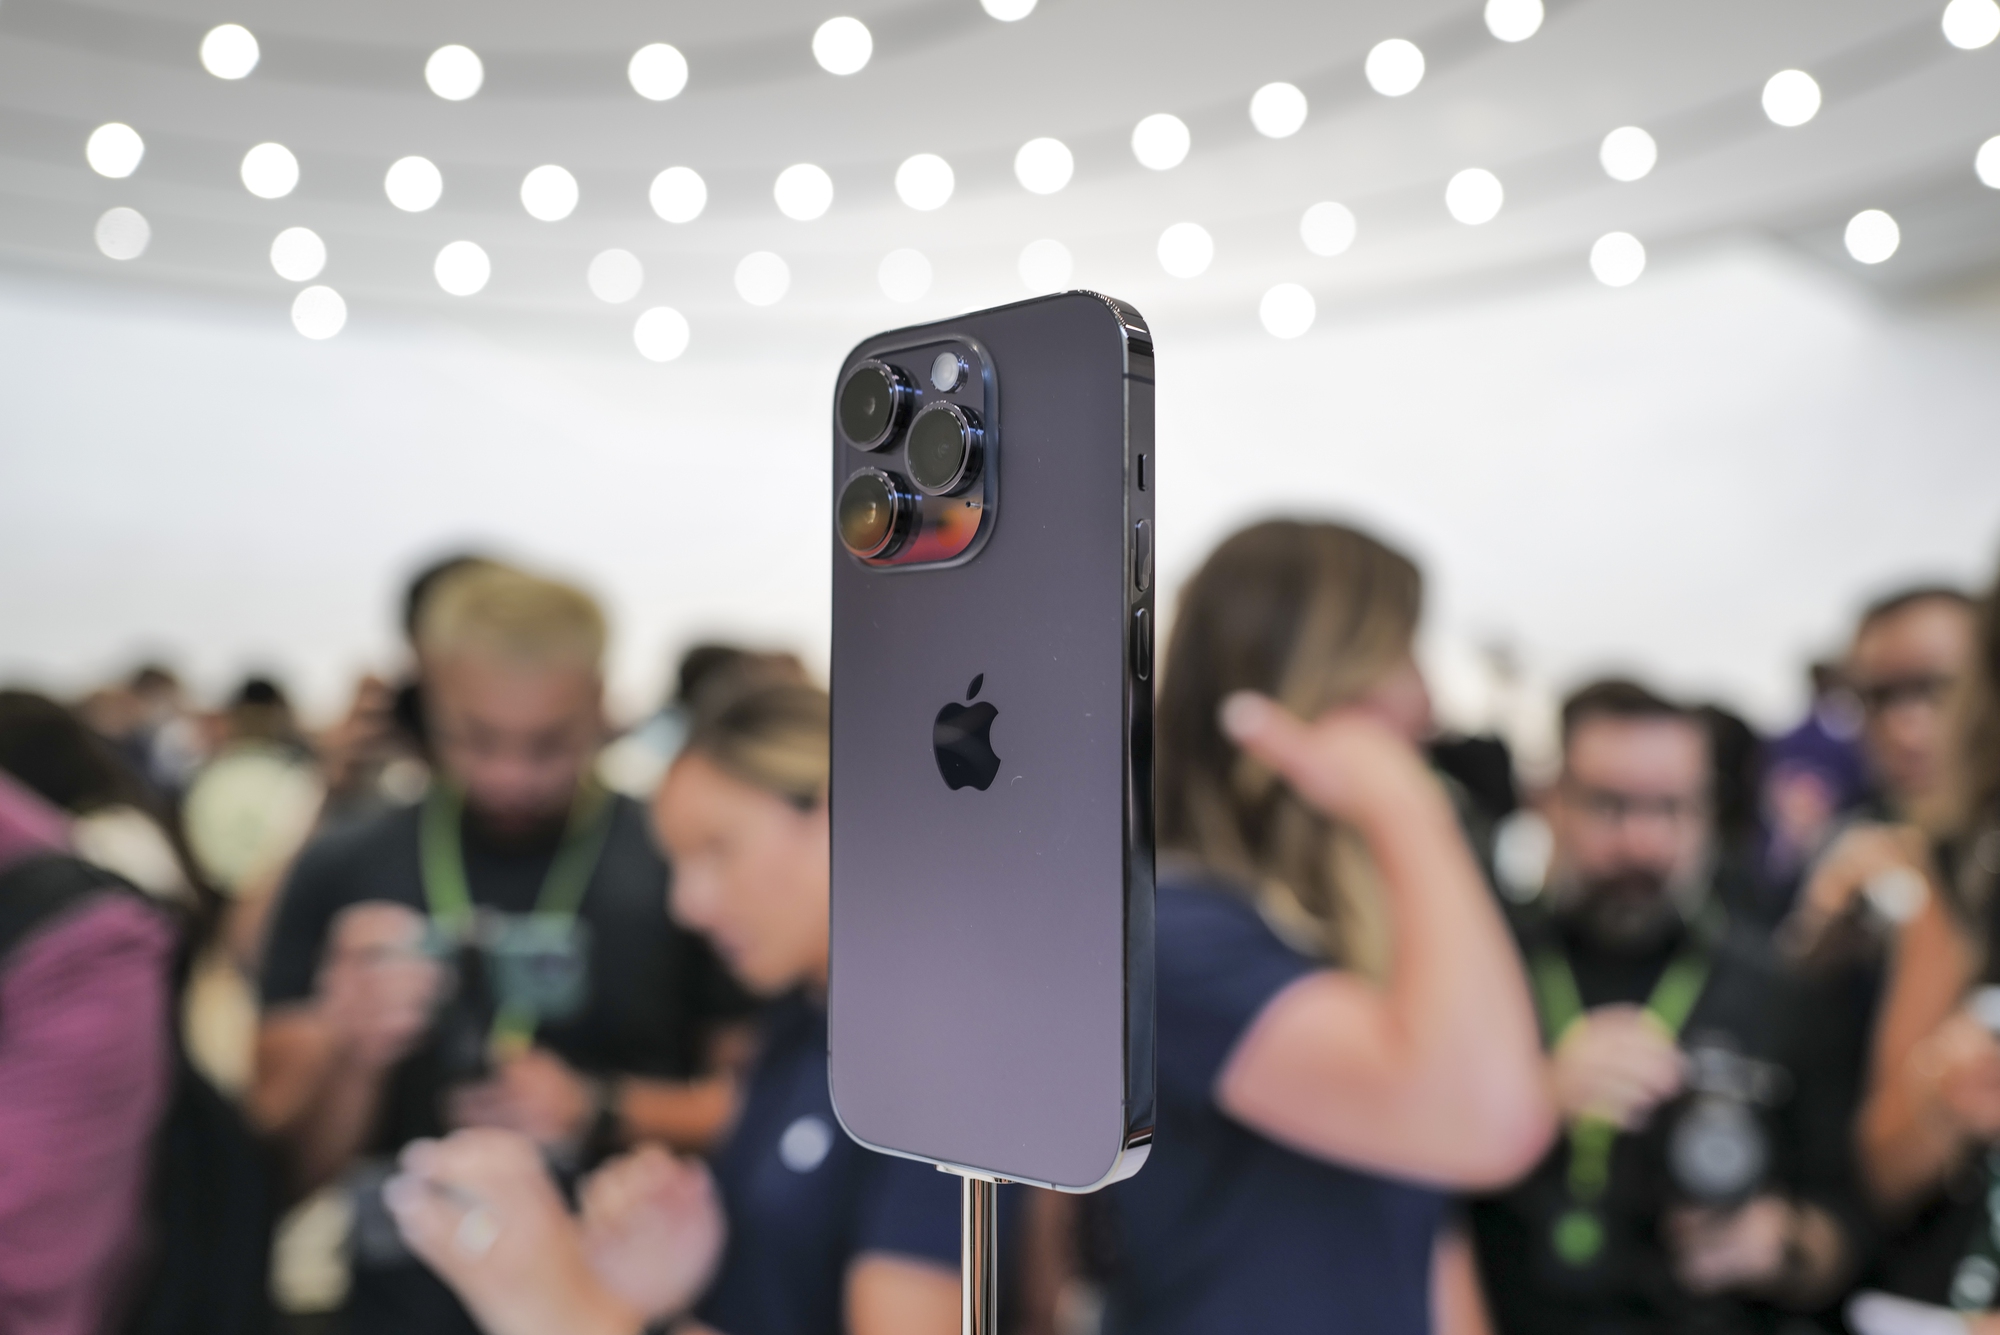 Đừng bỏ lỡ hình ảnh về iPhone 14 Pro màu tím này, với độ bóng và độ sắc nét hoàn hảo, chiếc iPhone này sẽ làm say đắm trái tim của bạn với màu sắc tuyệt đẹp.